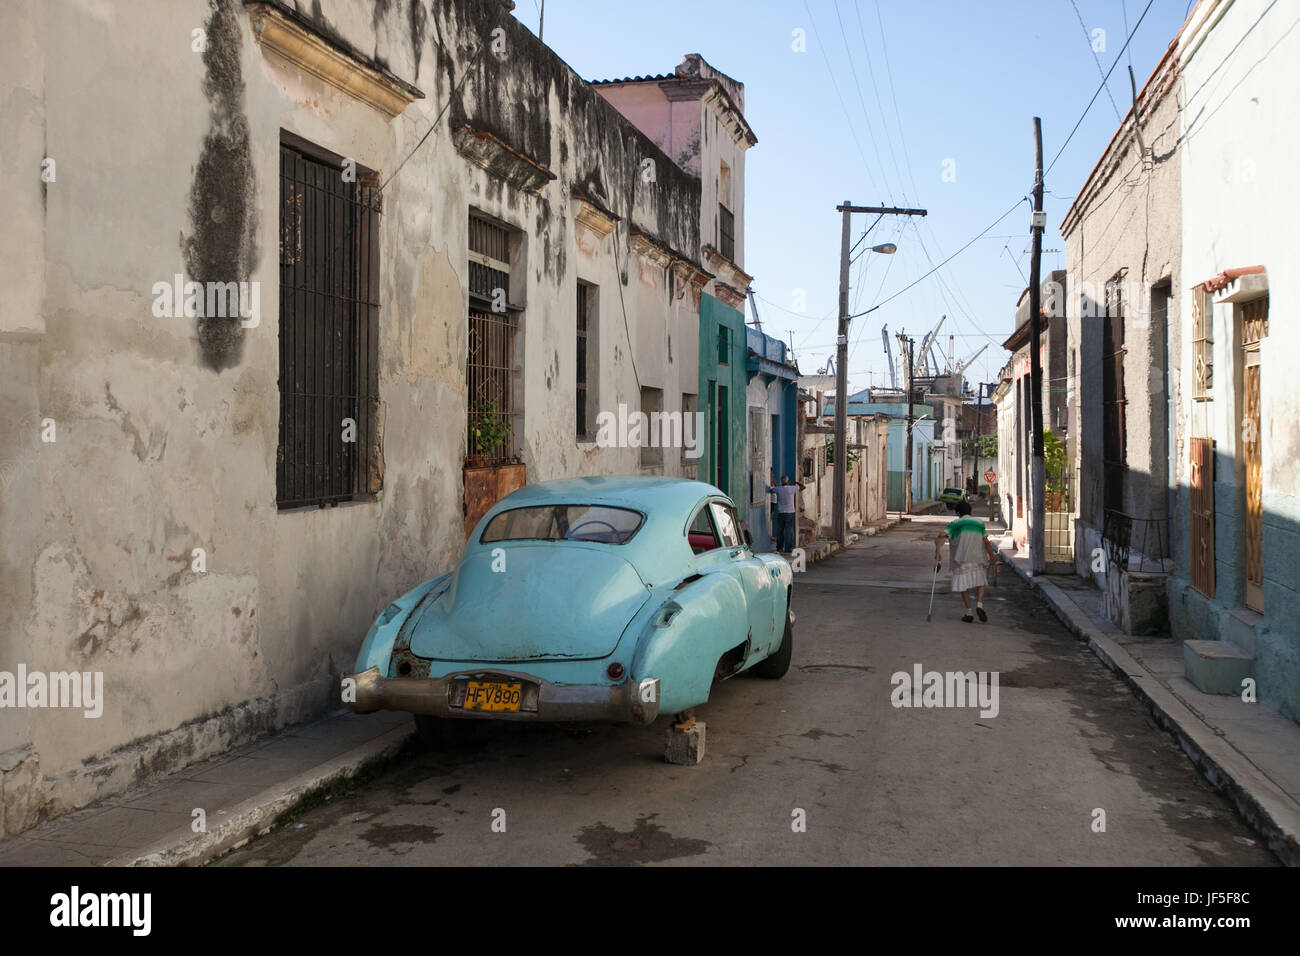 Auf einer Straße in der Innenstadt von Havanna beruht ein amerikanischen Oldtimer auf ein Betonklotz, wie eine Frau vorbeigeht. Stockfoto